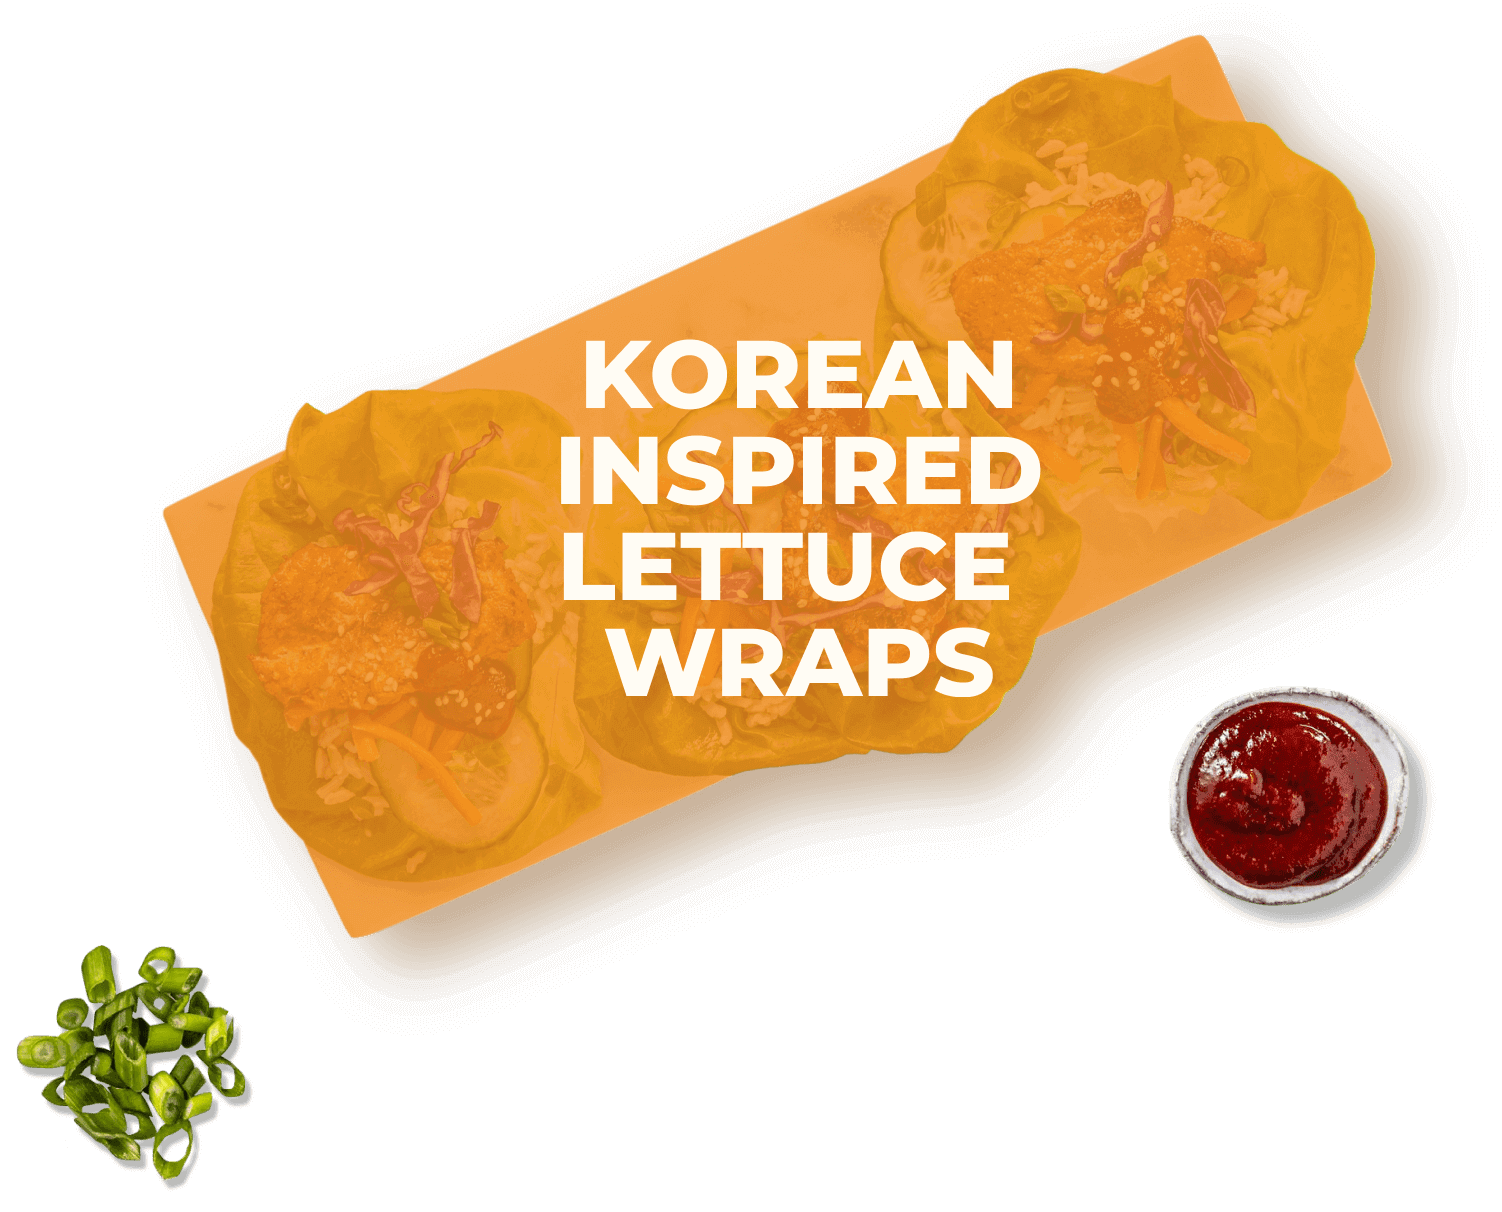 Korean inspired lettuce wraps hover state